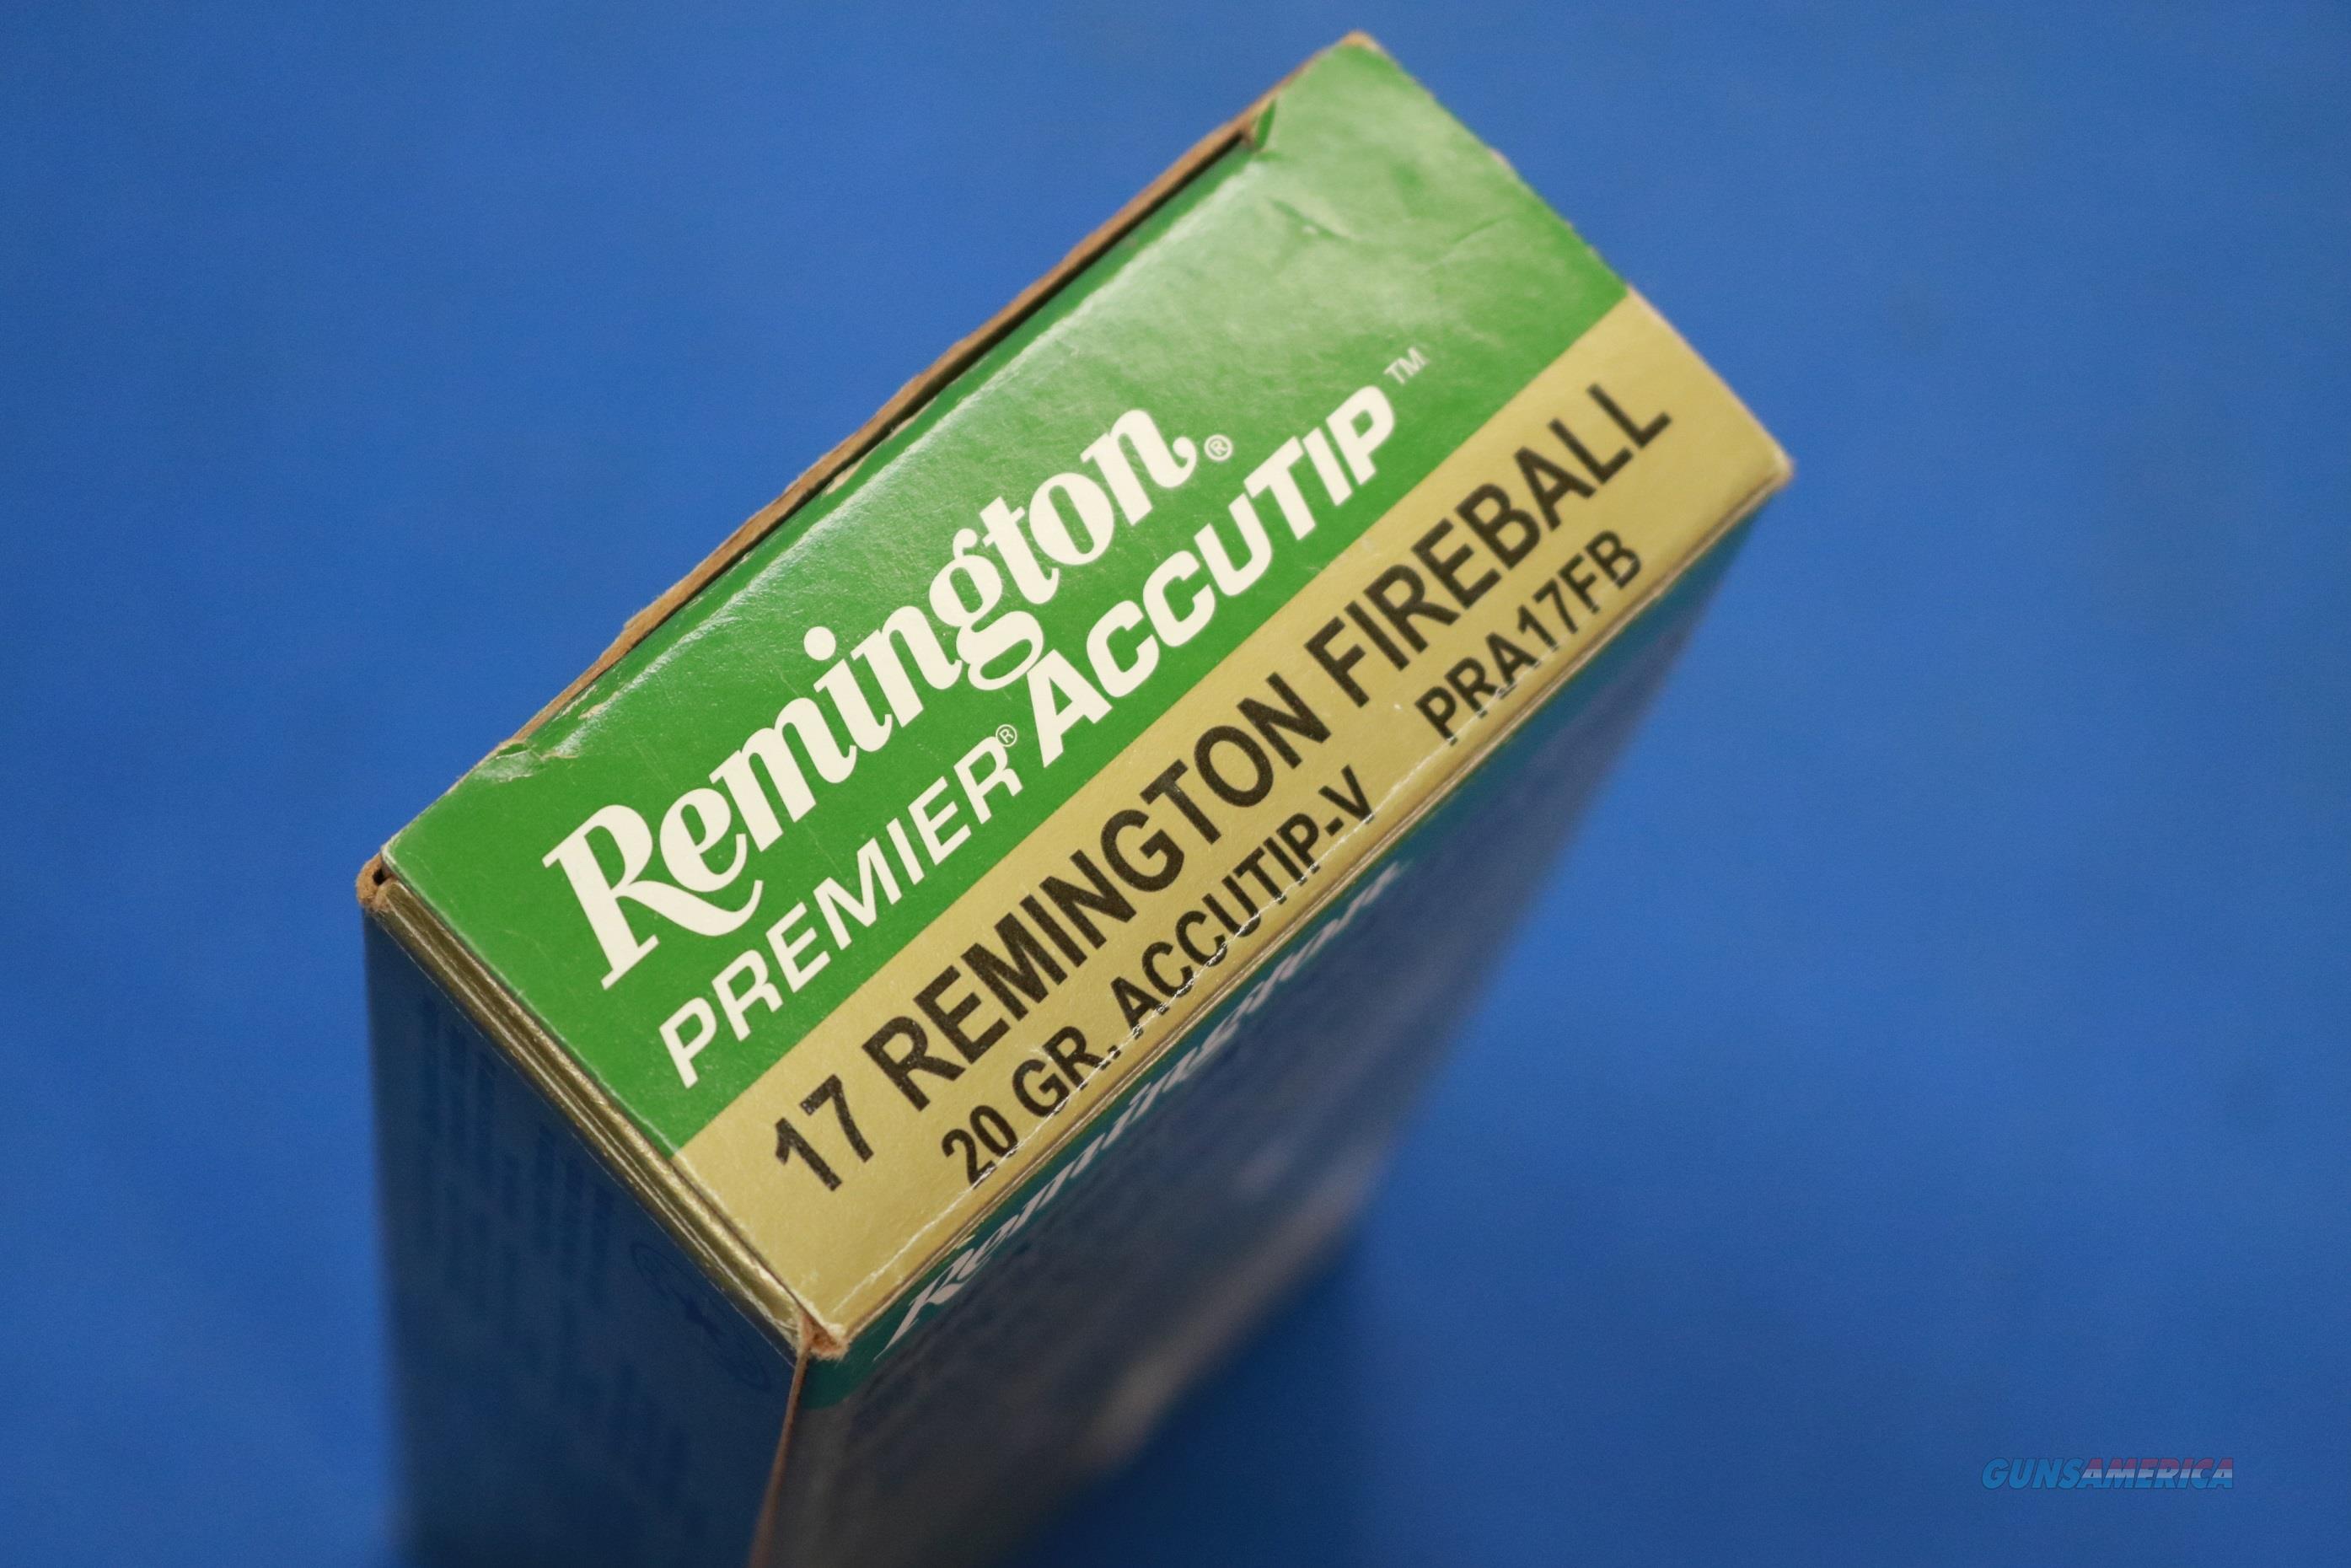 REMINGTON PREMIER .17 REM FIREBALL ... for sale at Gunsamerica.com ...